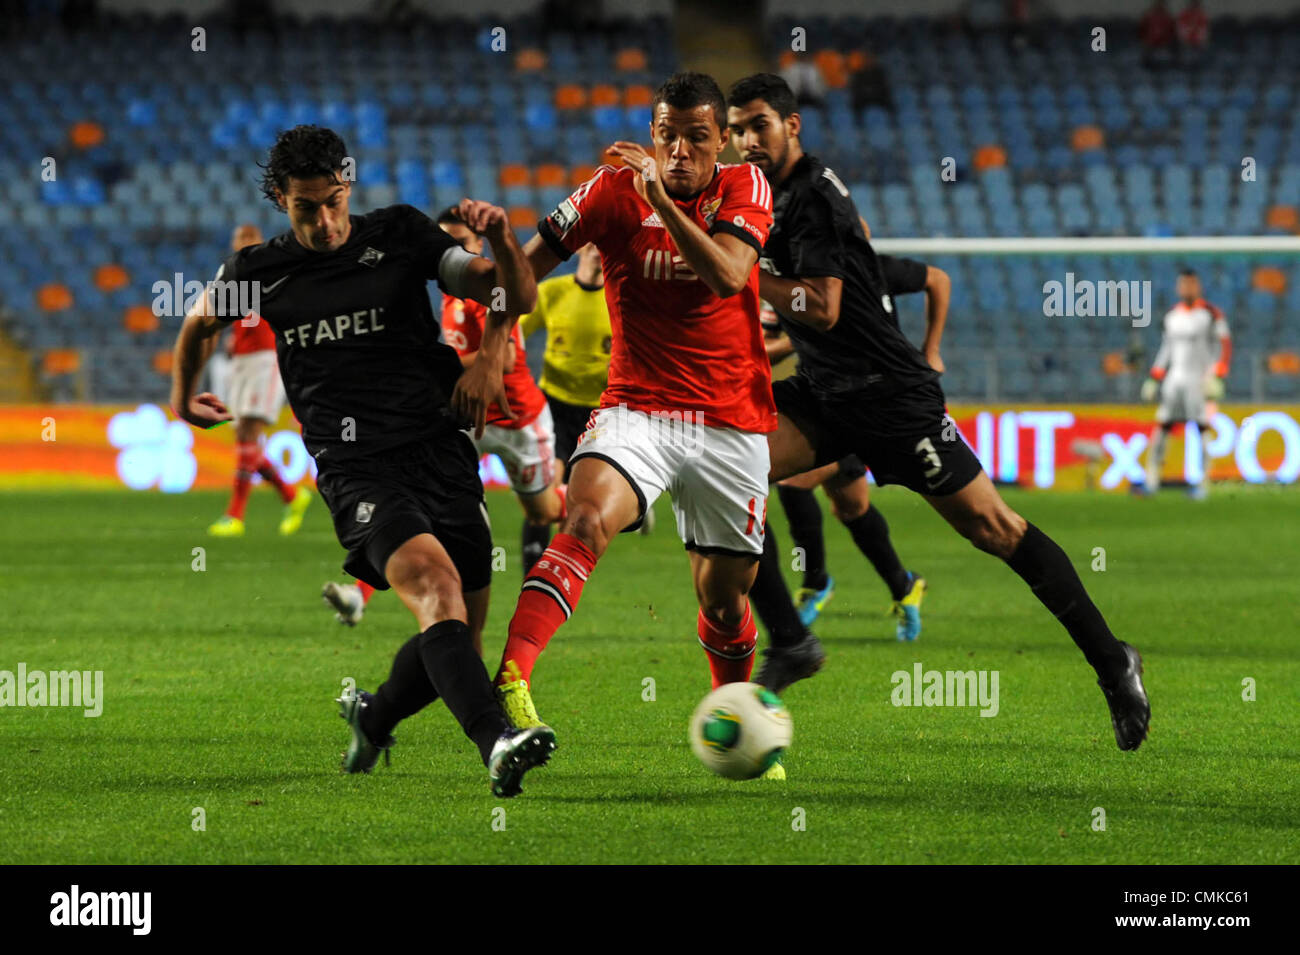 L'attaquant brésilien de Benfica s'acharne pour Lima la balle avec Academica defender João du vrai au cours de la Liga Sagres portugaise match de football entre Academica et Benfica Banque D'Images